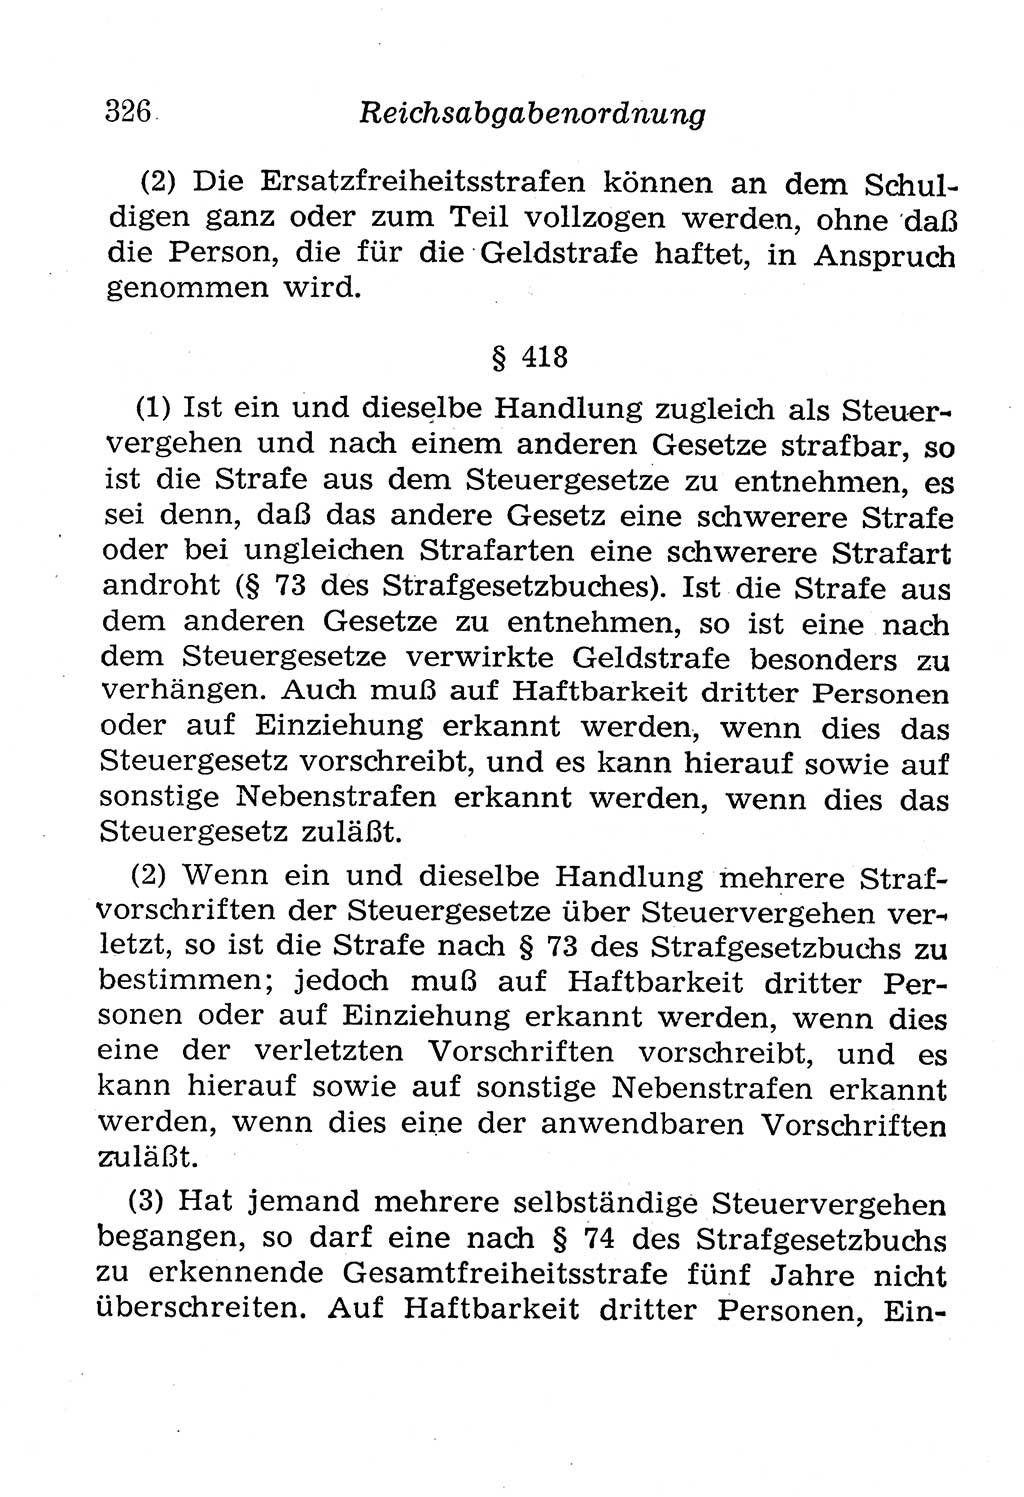 Strafgesetzbuch (StGB) und andere Strafgesetze [Deutsche Demokratische Republik (DDR)] 1958, Seite 326 (StGB Strafges. DDR 1958, S. 326)